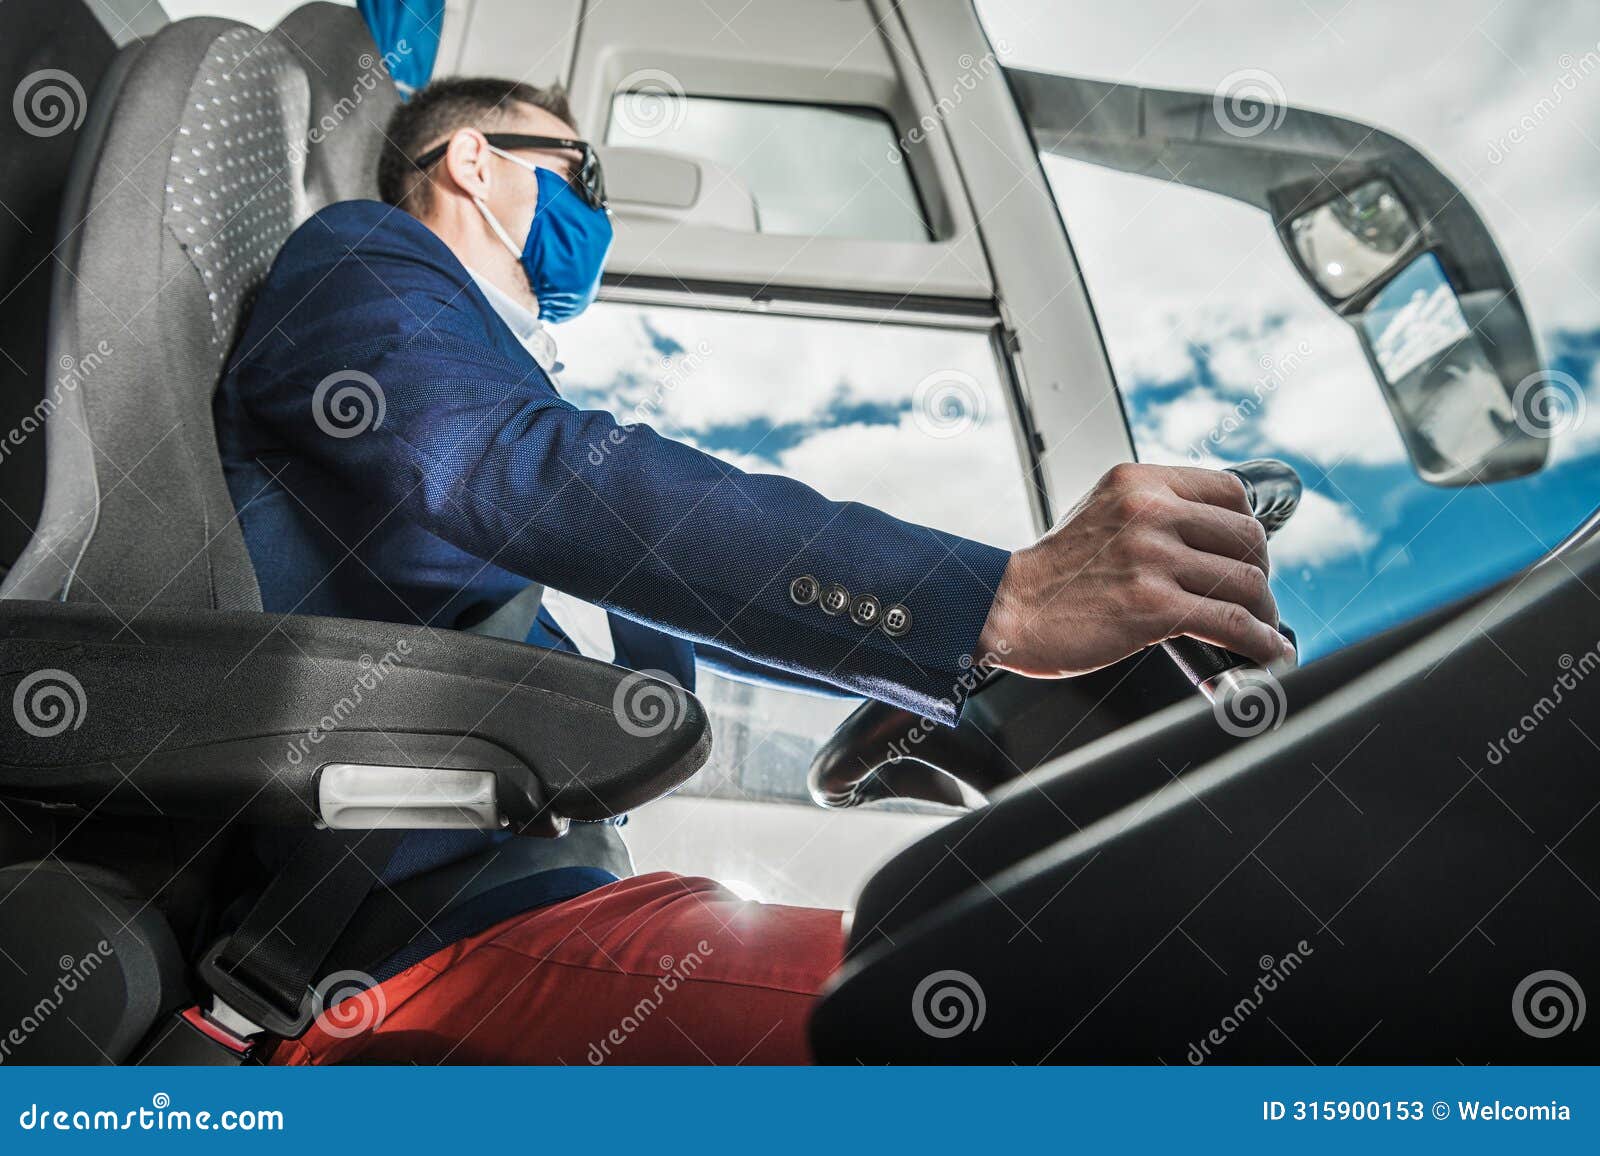 modern coach bus caucasian driver